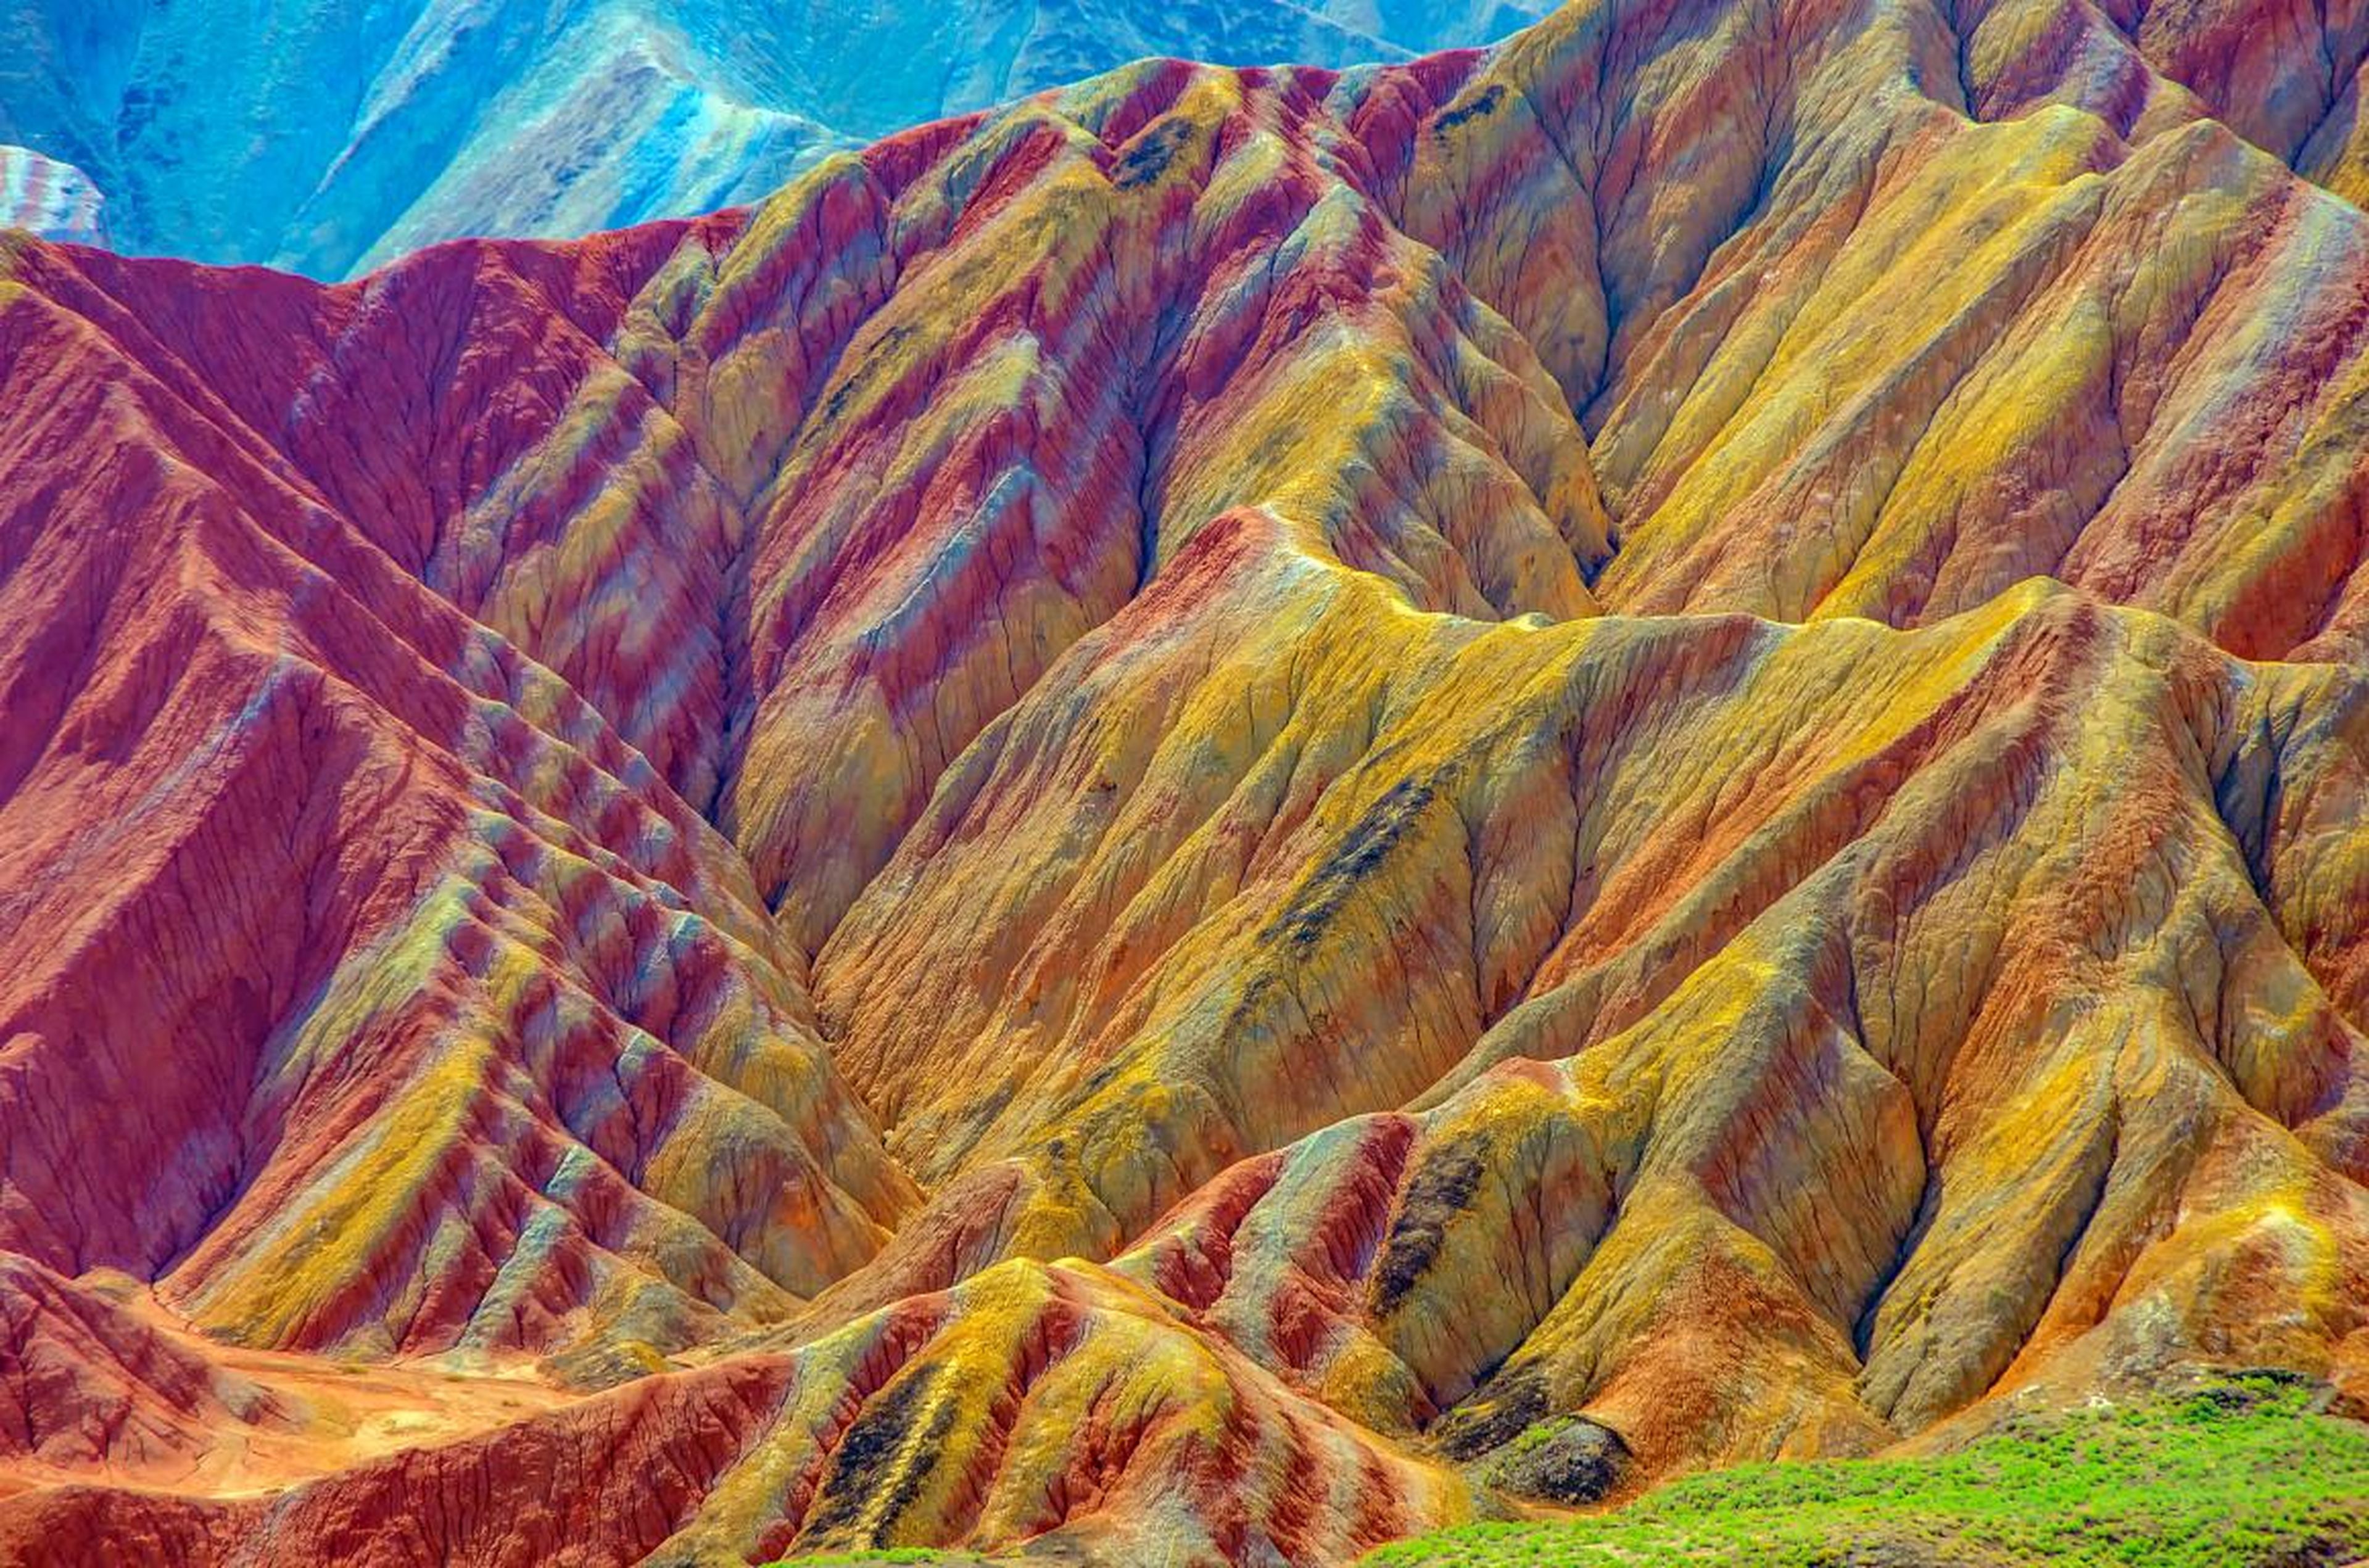 Las montañas multicolor tienen rayas rojas, amarillas, verdes y azules.